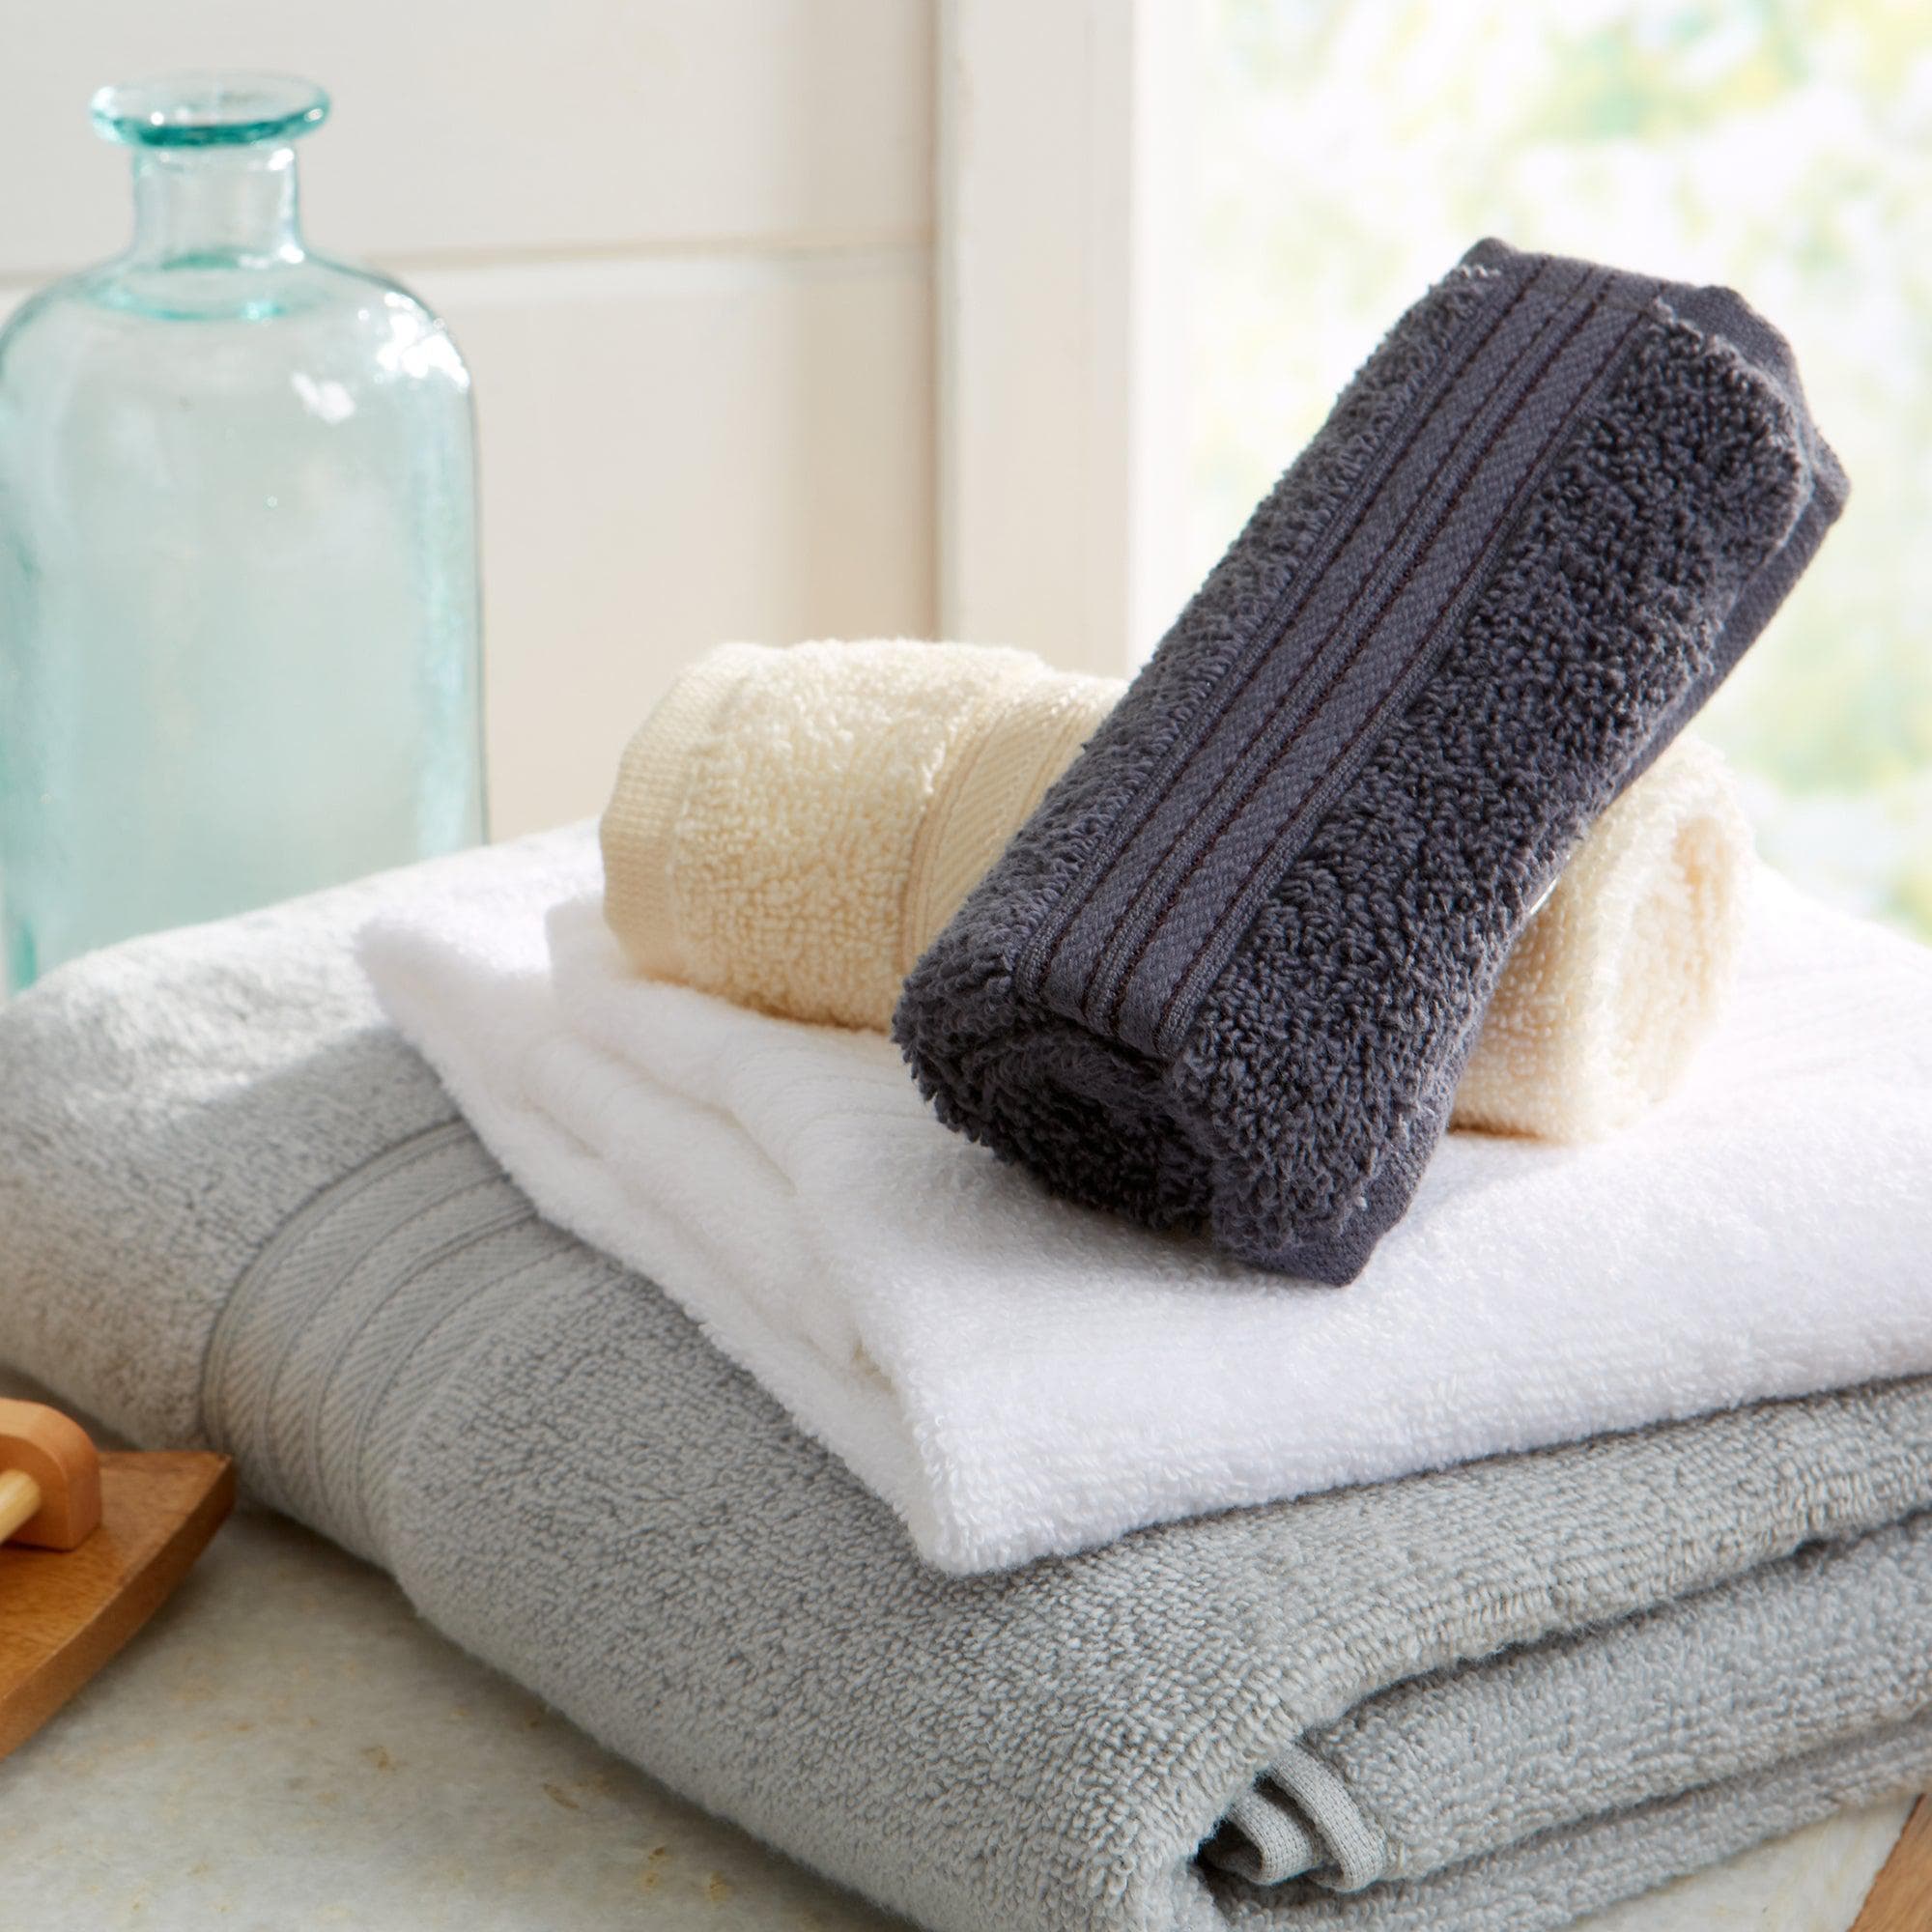 Soft 100% Cotton Quick Dry Bath Towels